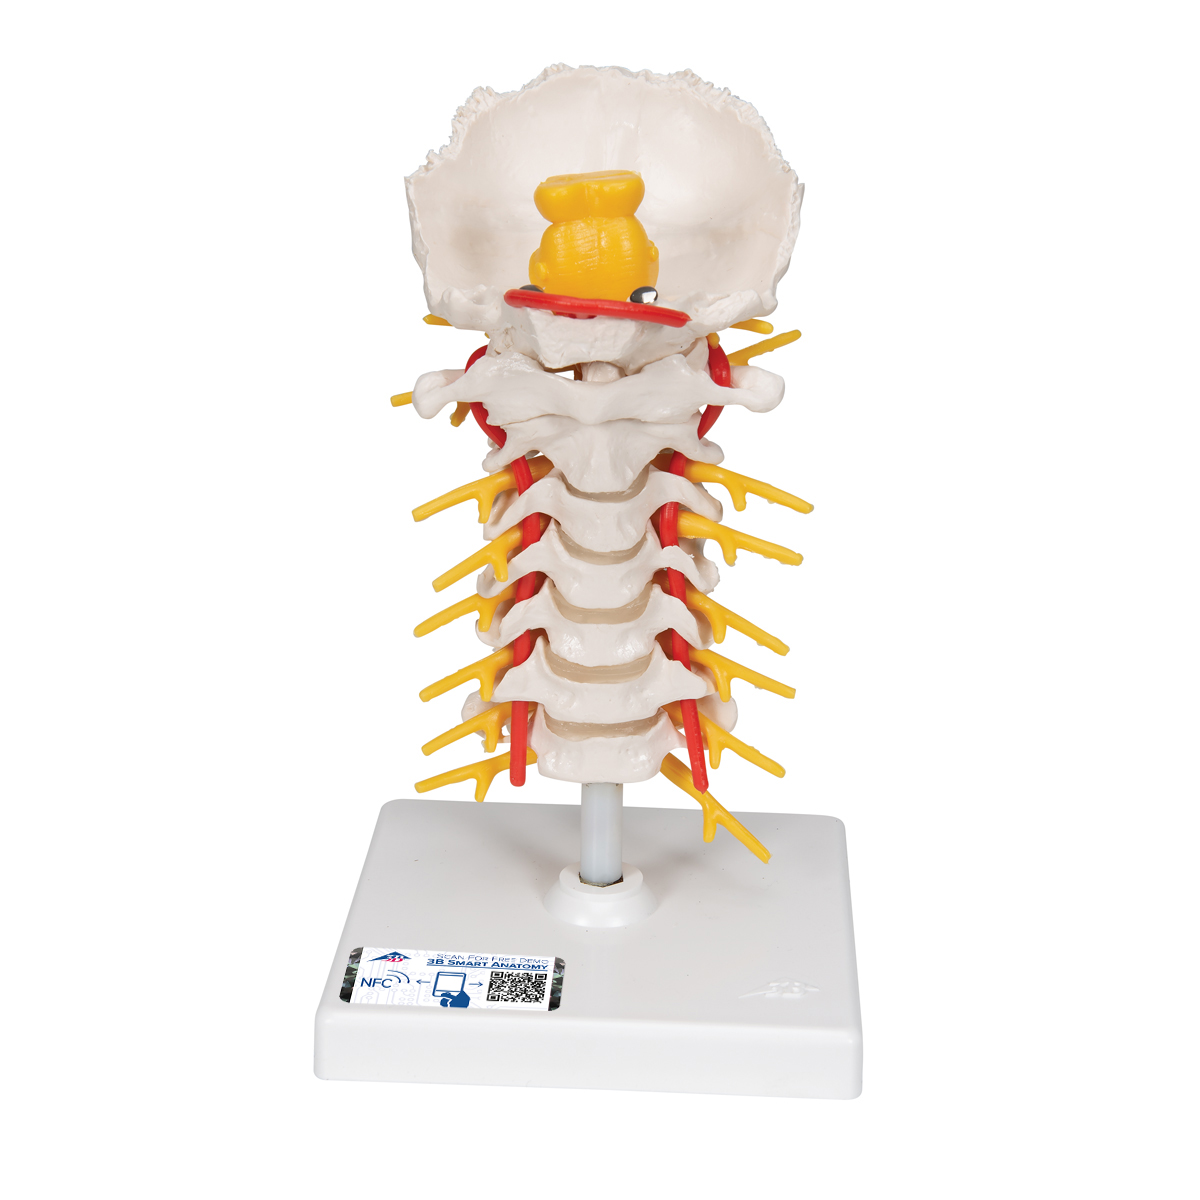 颈椎模型- 3B Smart Anatomy - 1000144 - A72 - 脊椎模型- 3B Scientific